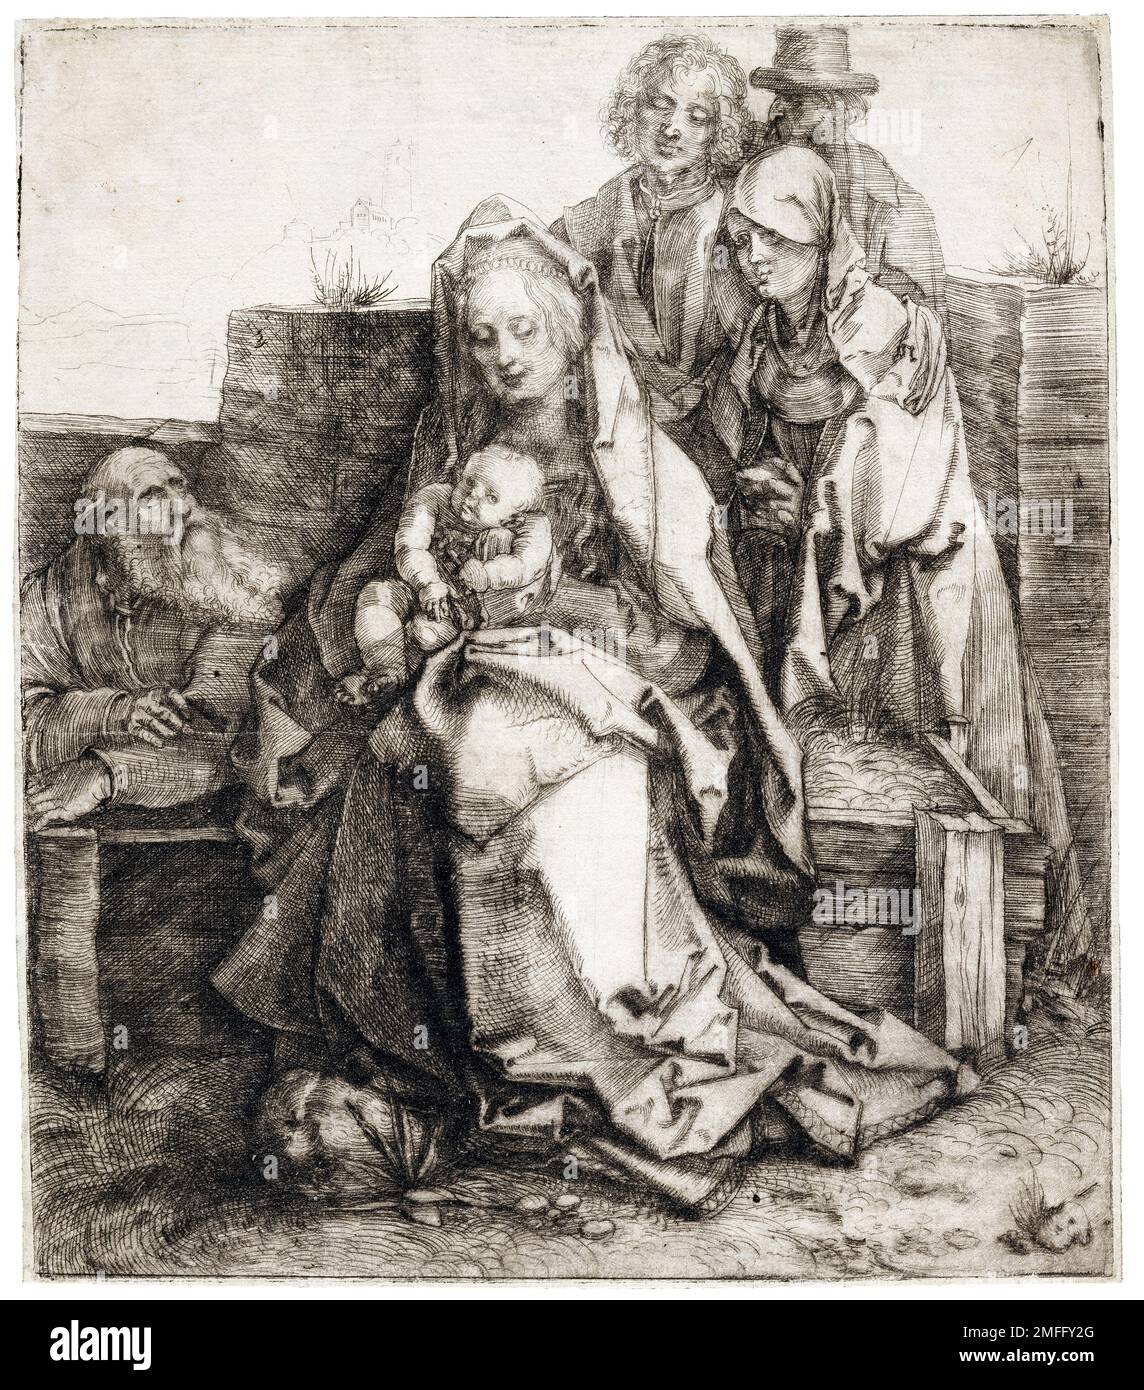 Albrecht Durer, Sainte famille avec Saint Jean, la Madeleine, et Nicodème, gravure en point sec, 1512-1513 Banque D'Images